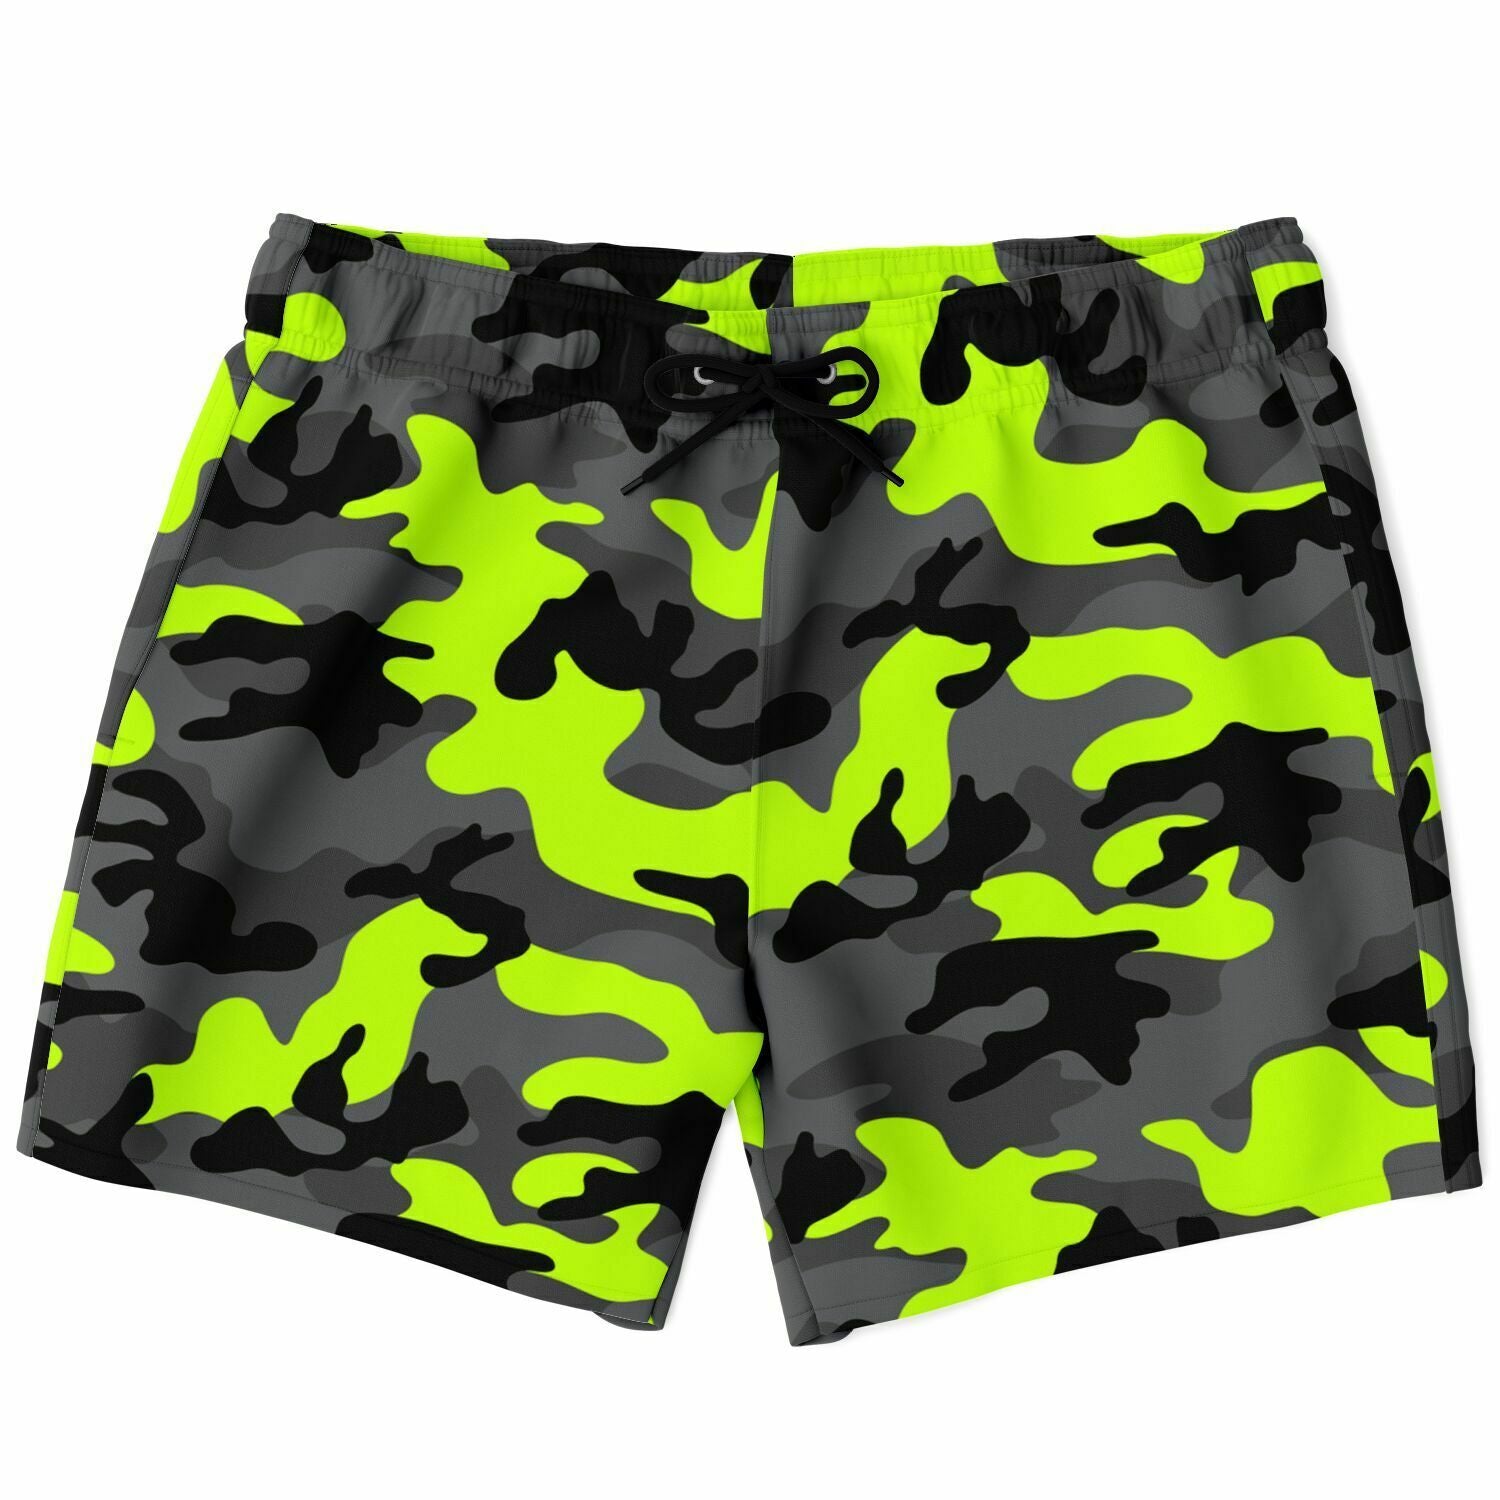 Men's Black Green Camouflage Swimsuit Shorts Swim Trunks